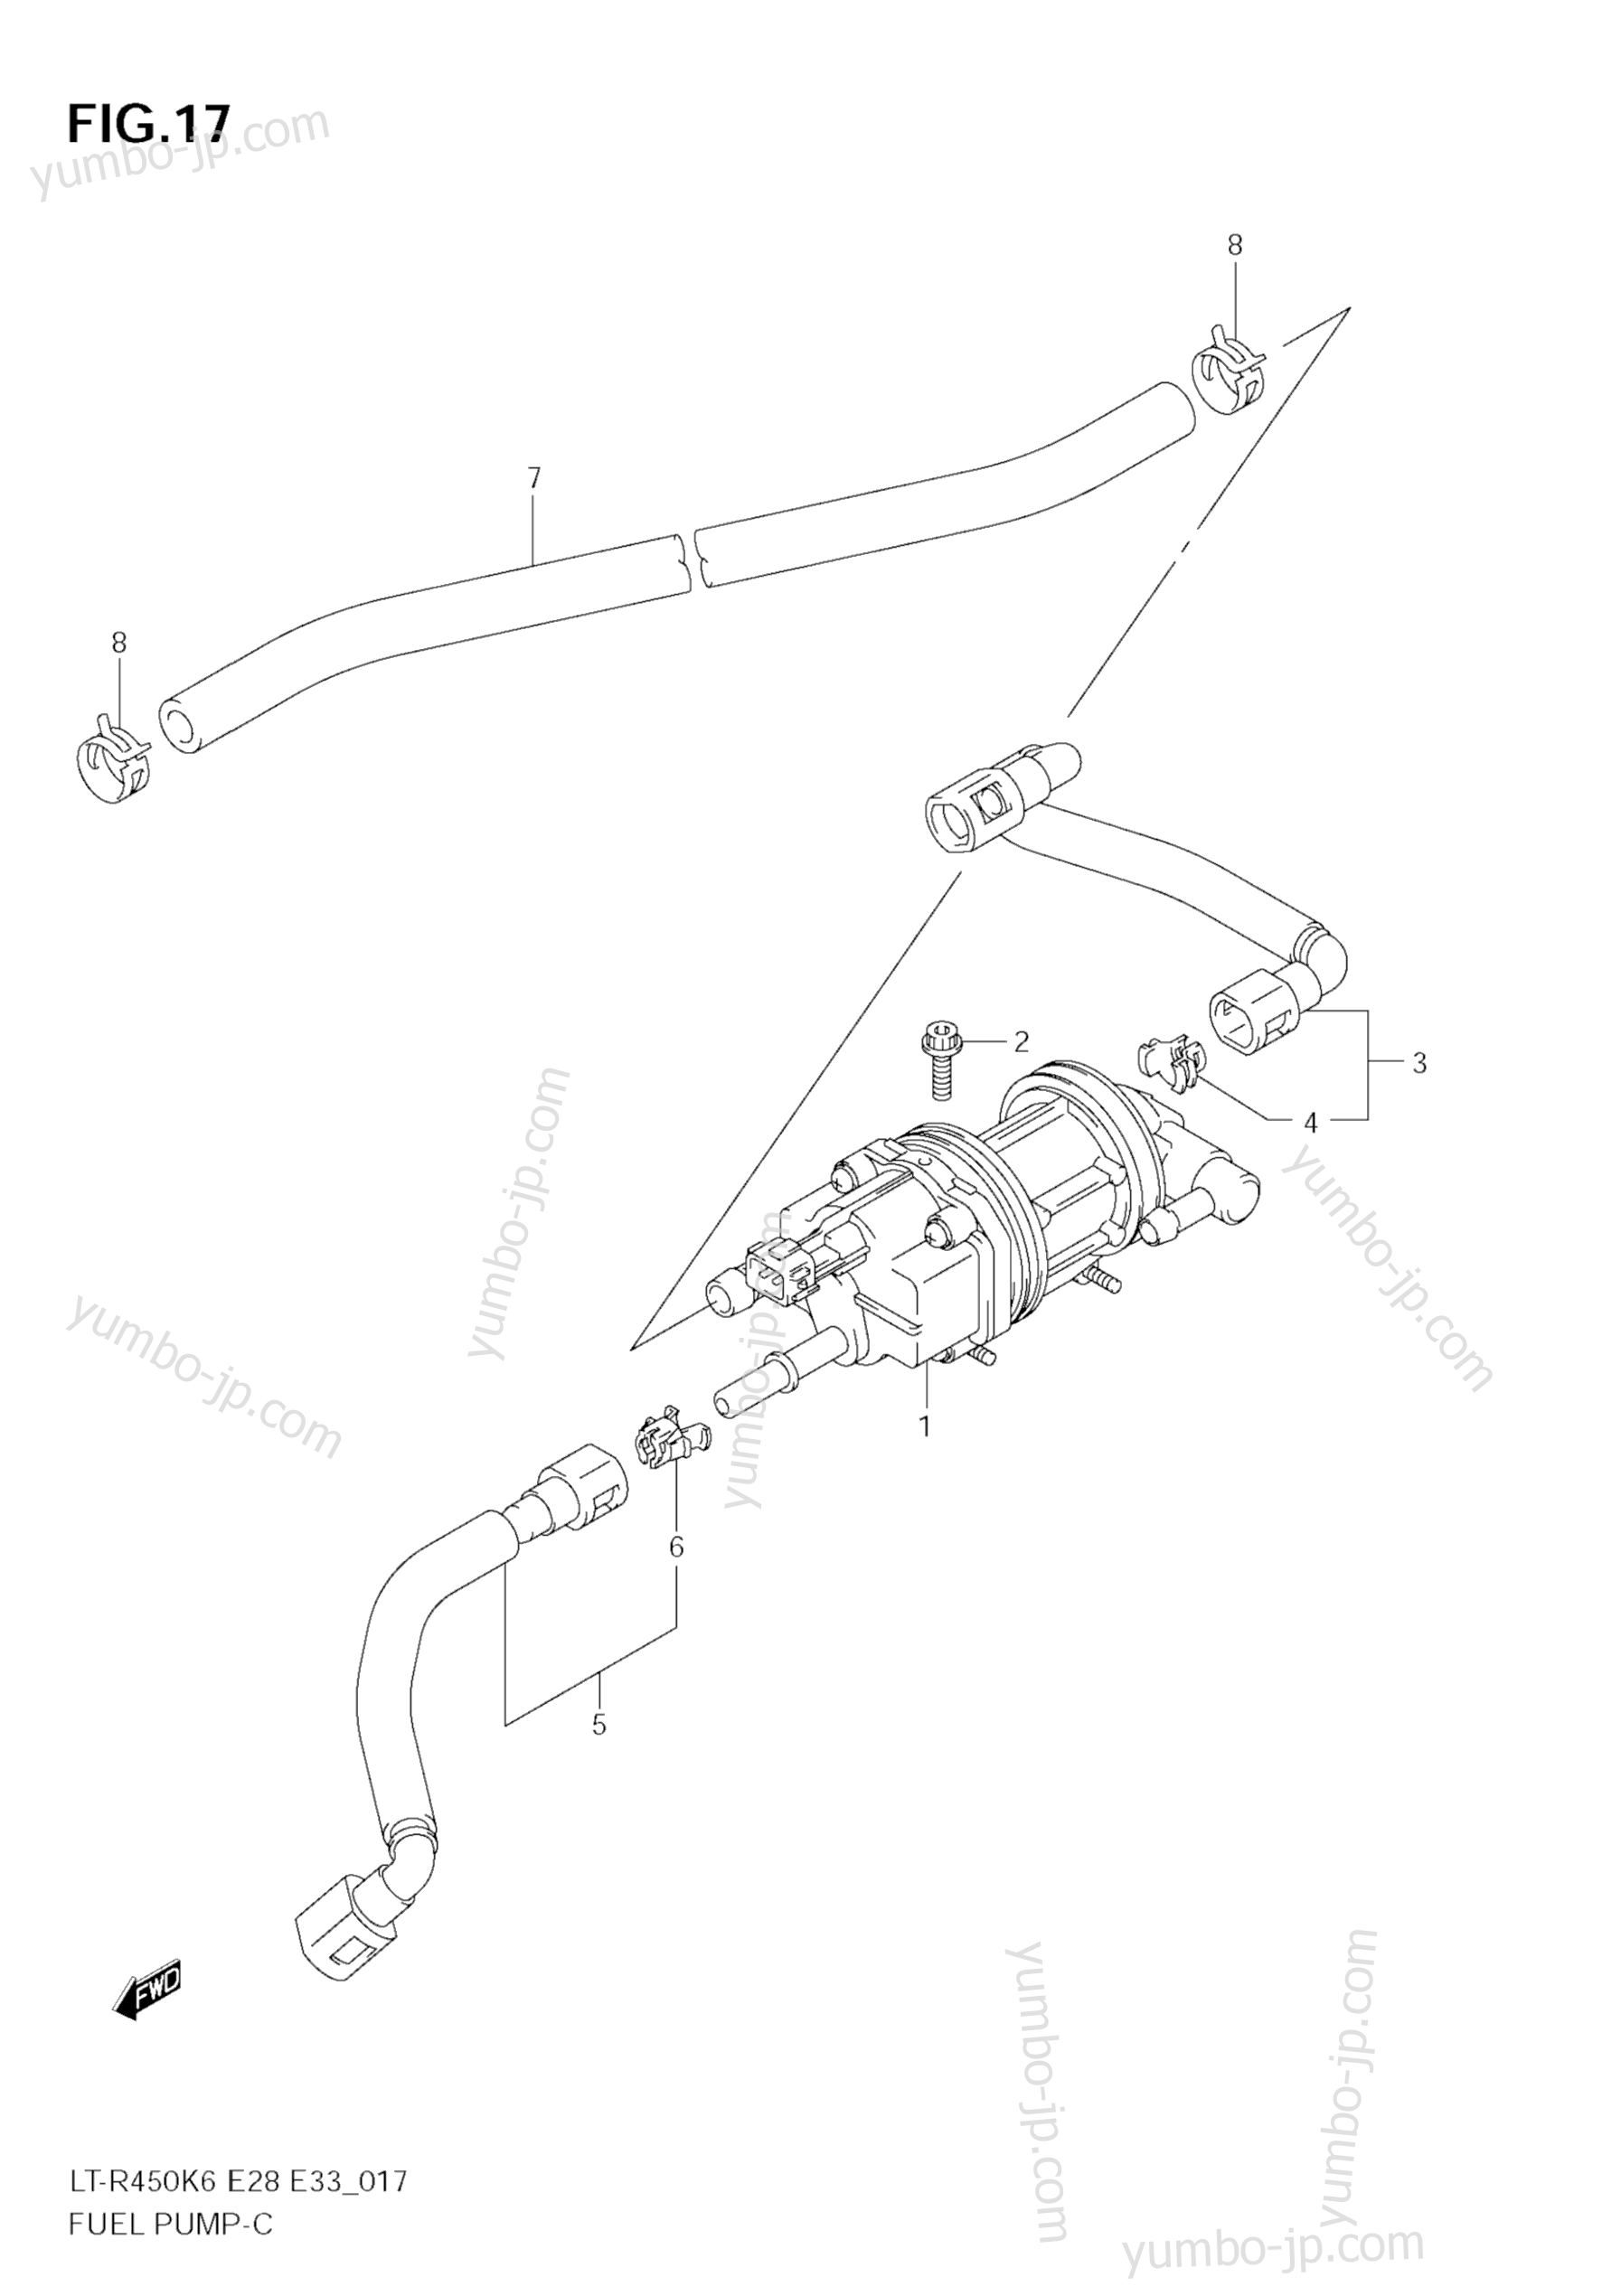 Топливный насос для квадроциклов SUZUKI QuadRacer (LT-R450) 2008 г.